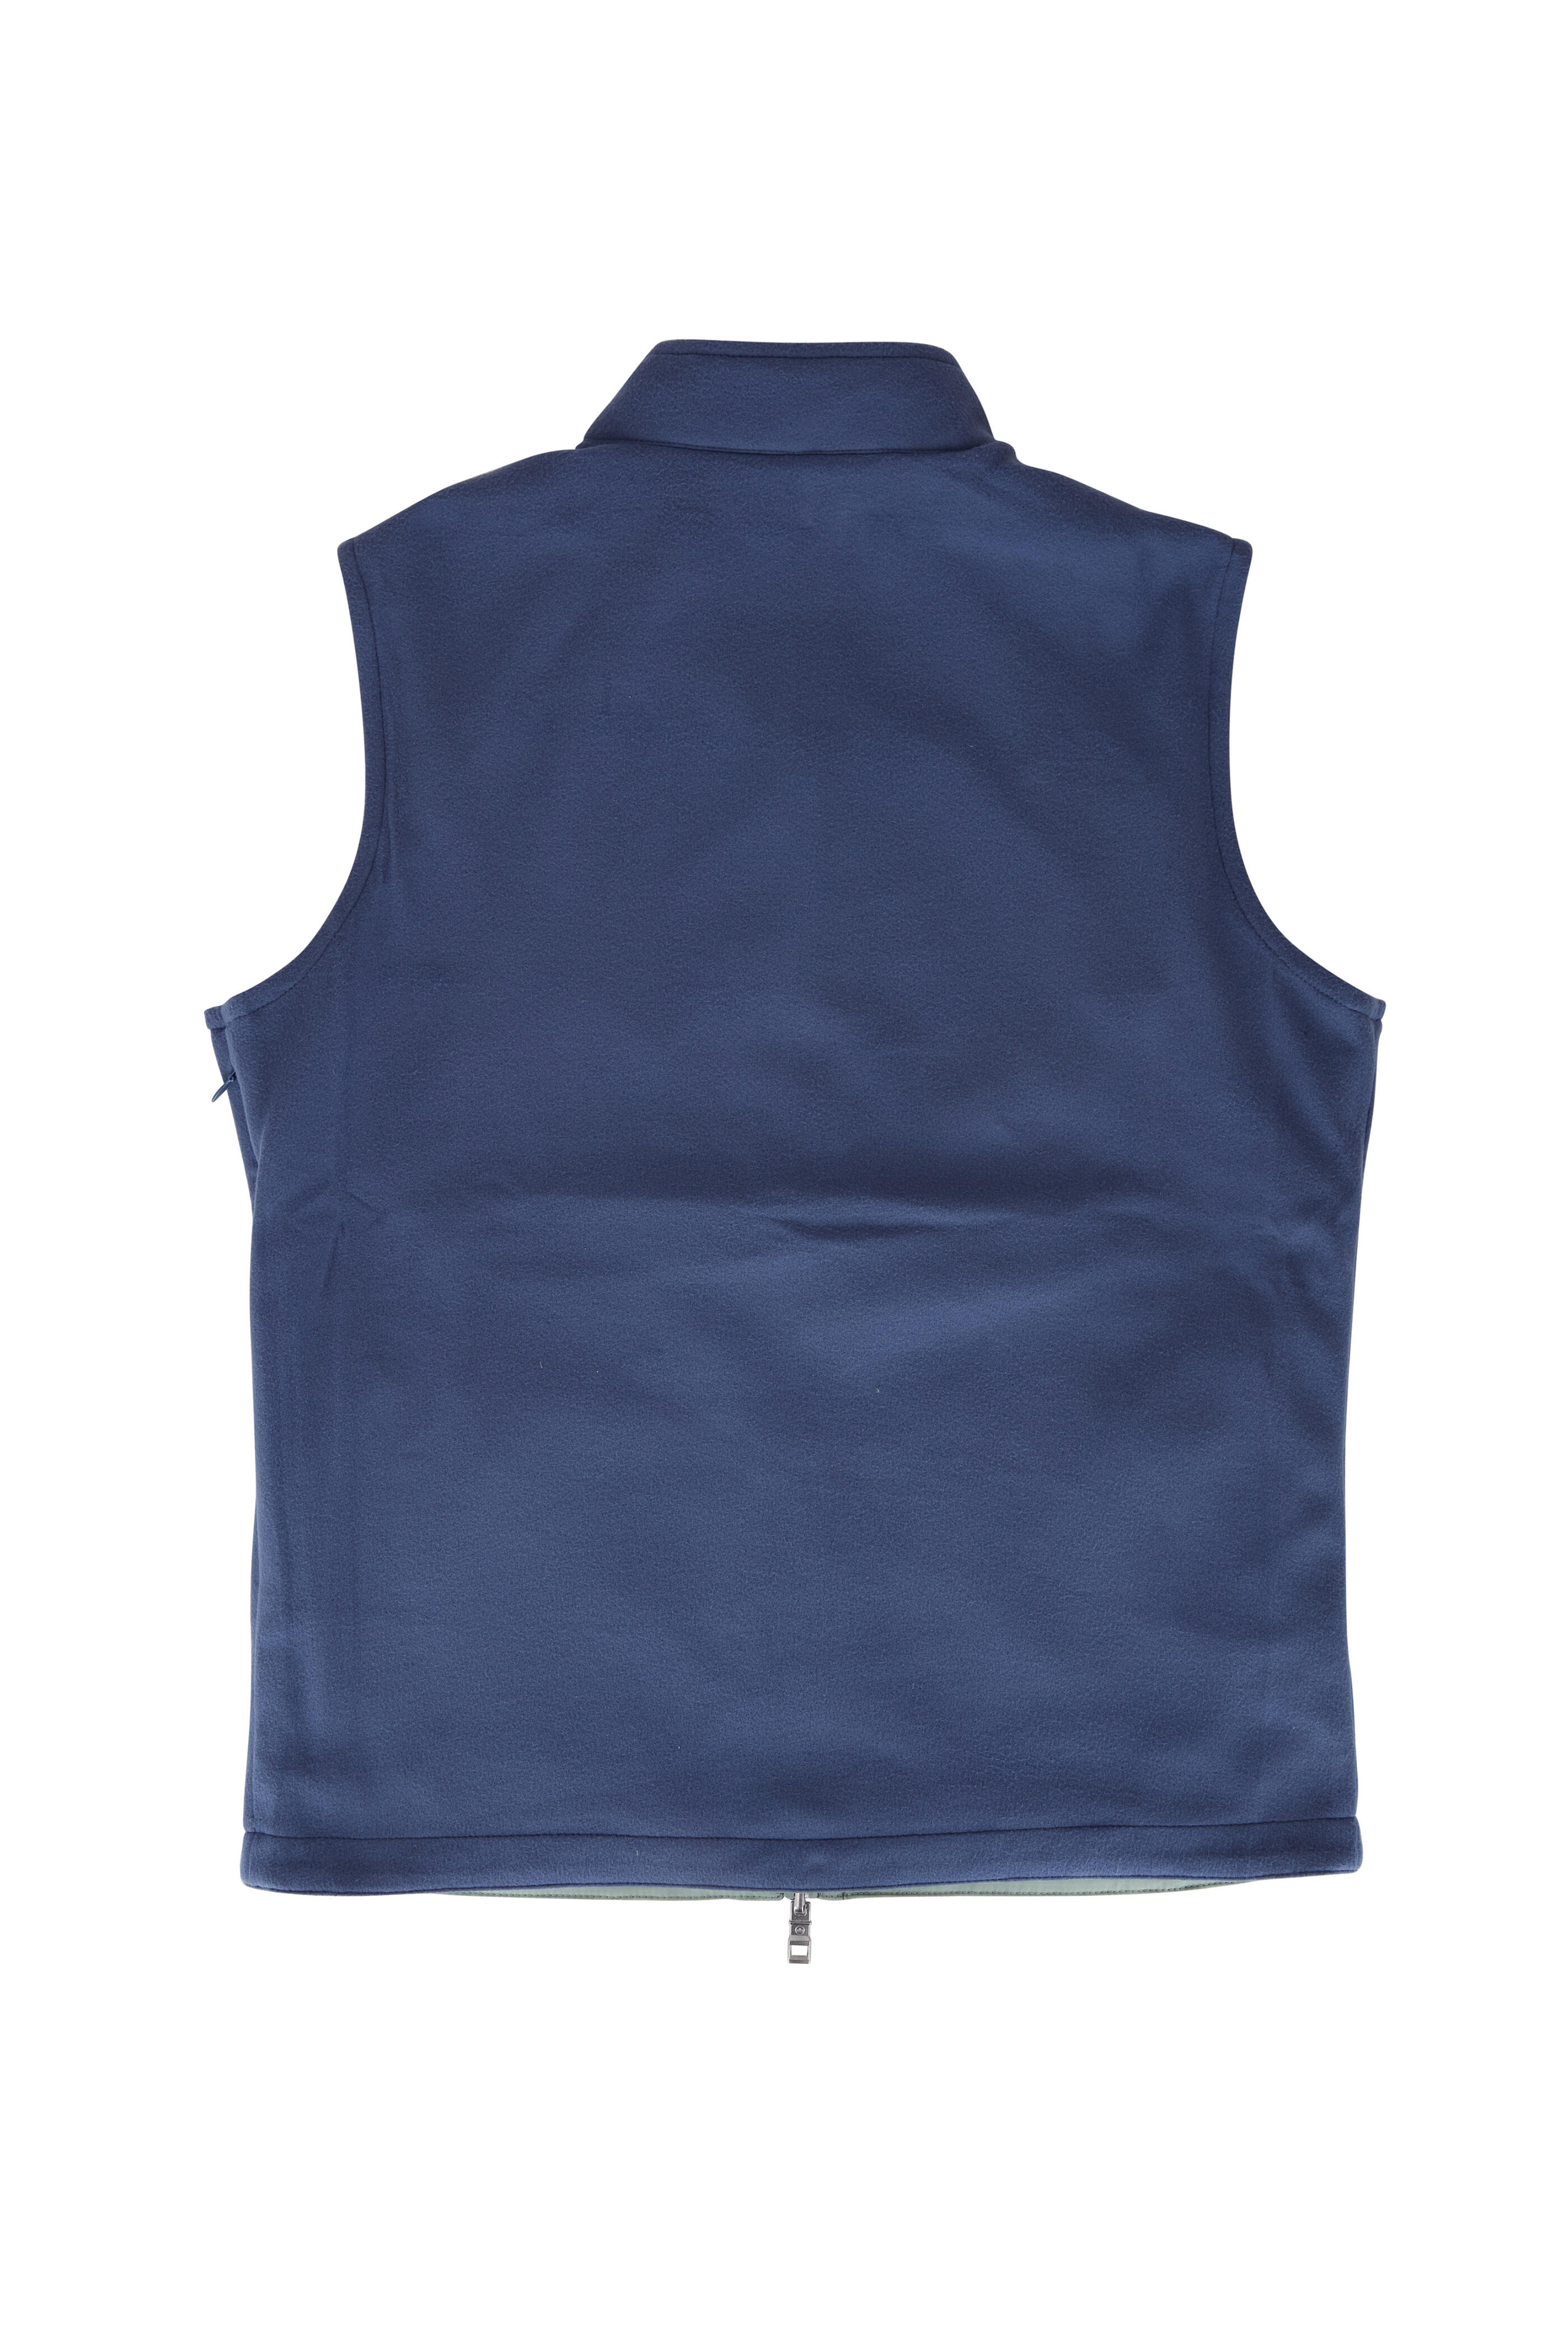 Peter Millar - Olive & Blue Thermal Reversible Vest